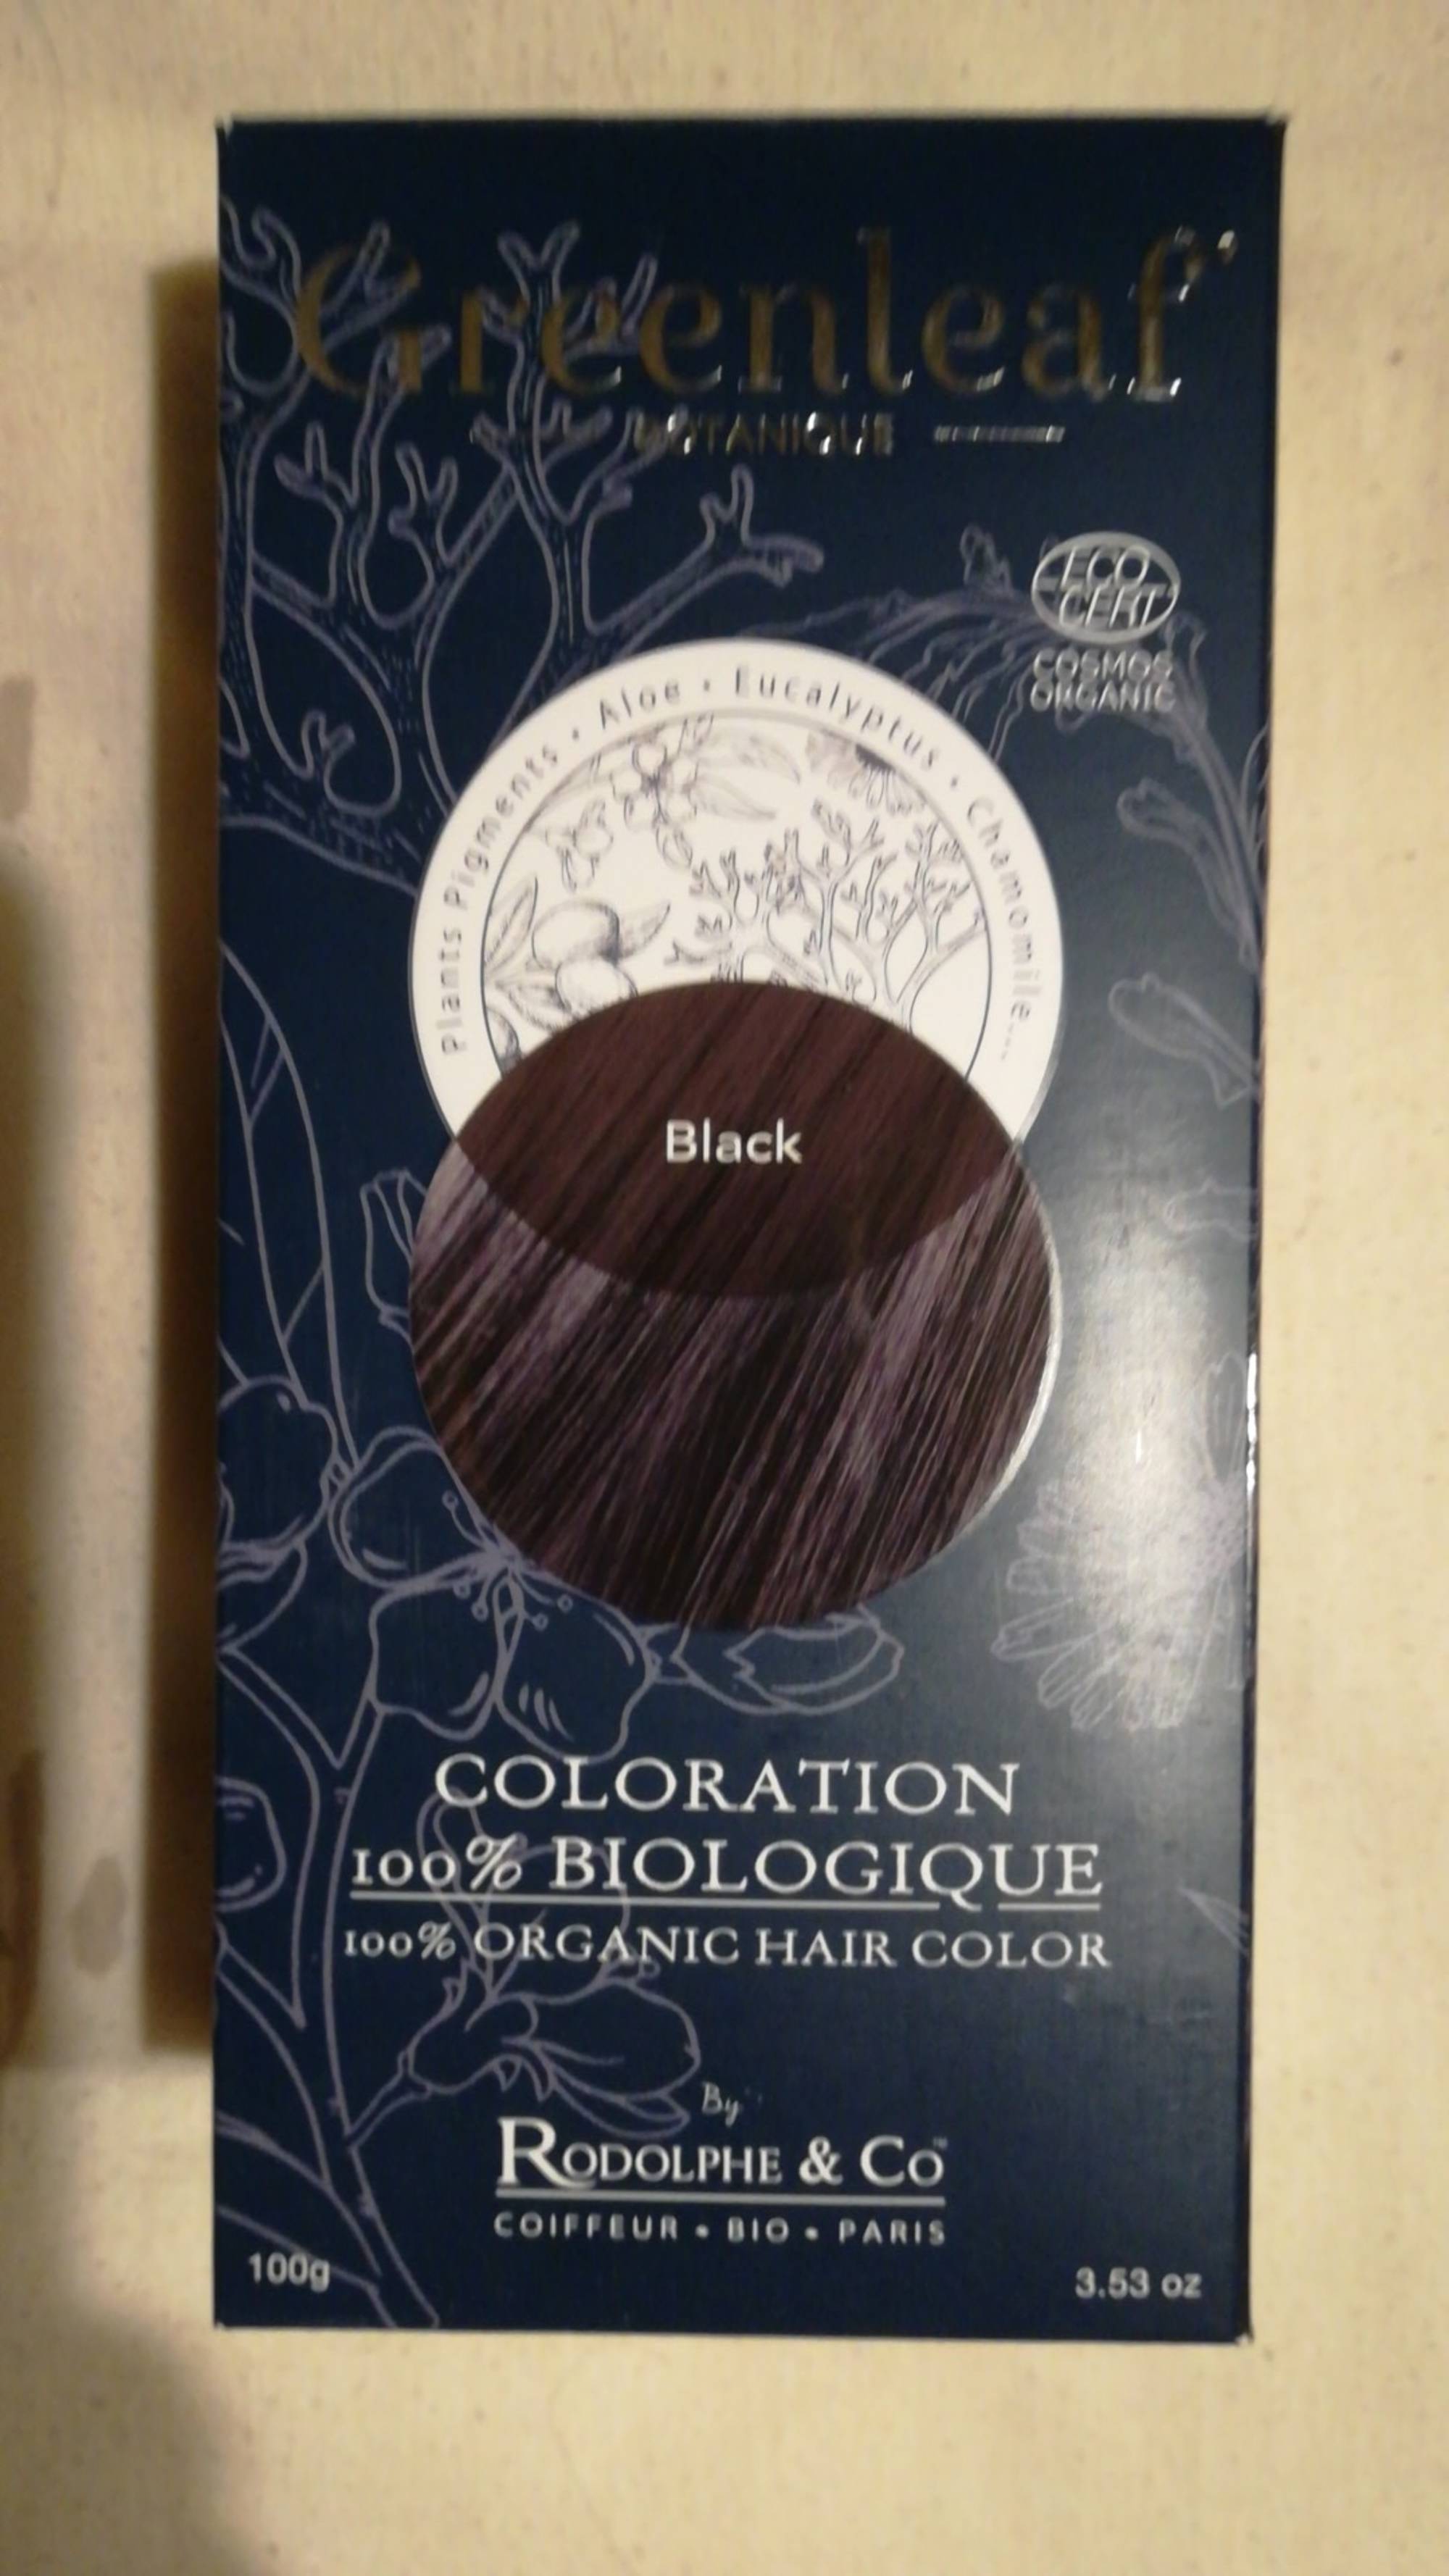 RODOLPHE & CO - Greenleaf - Coloration 100% biologique black 